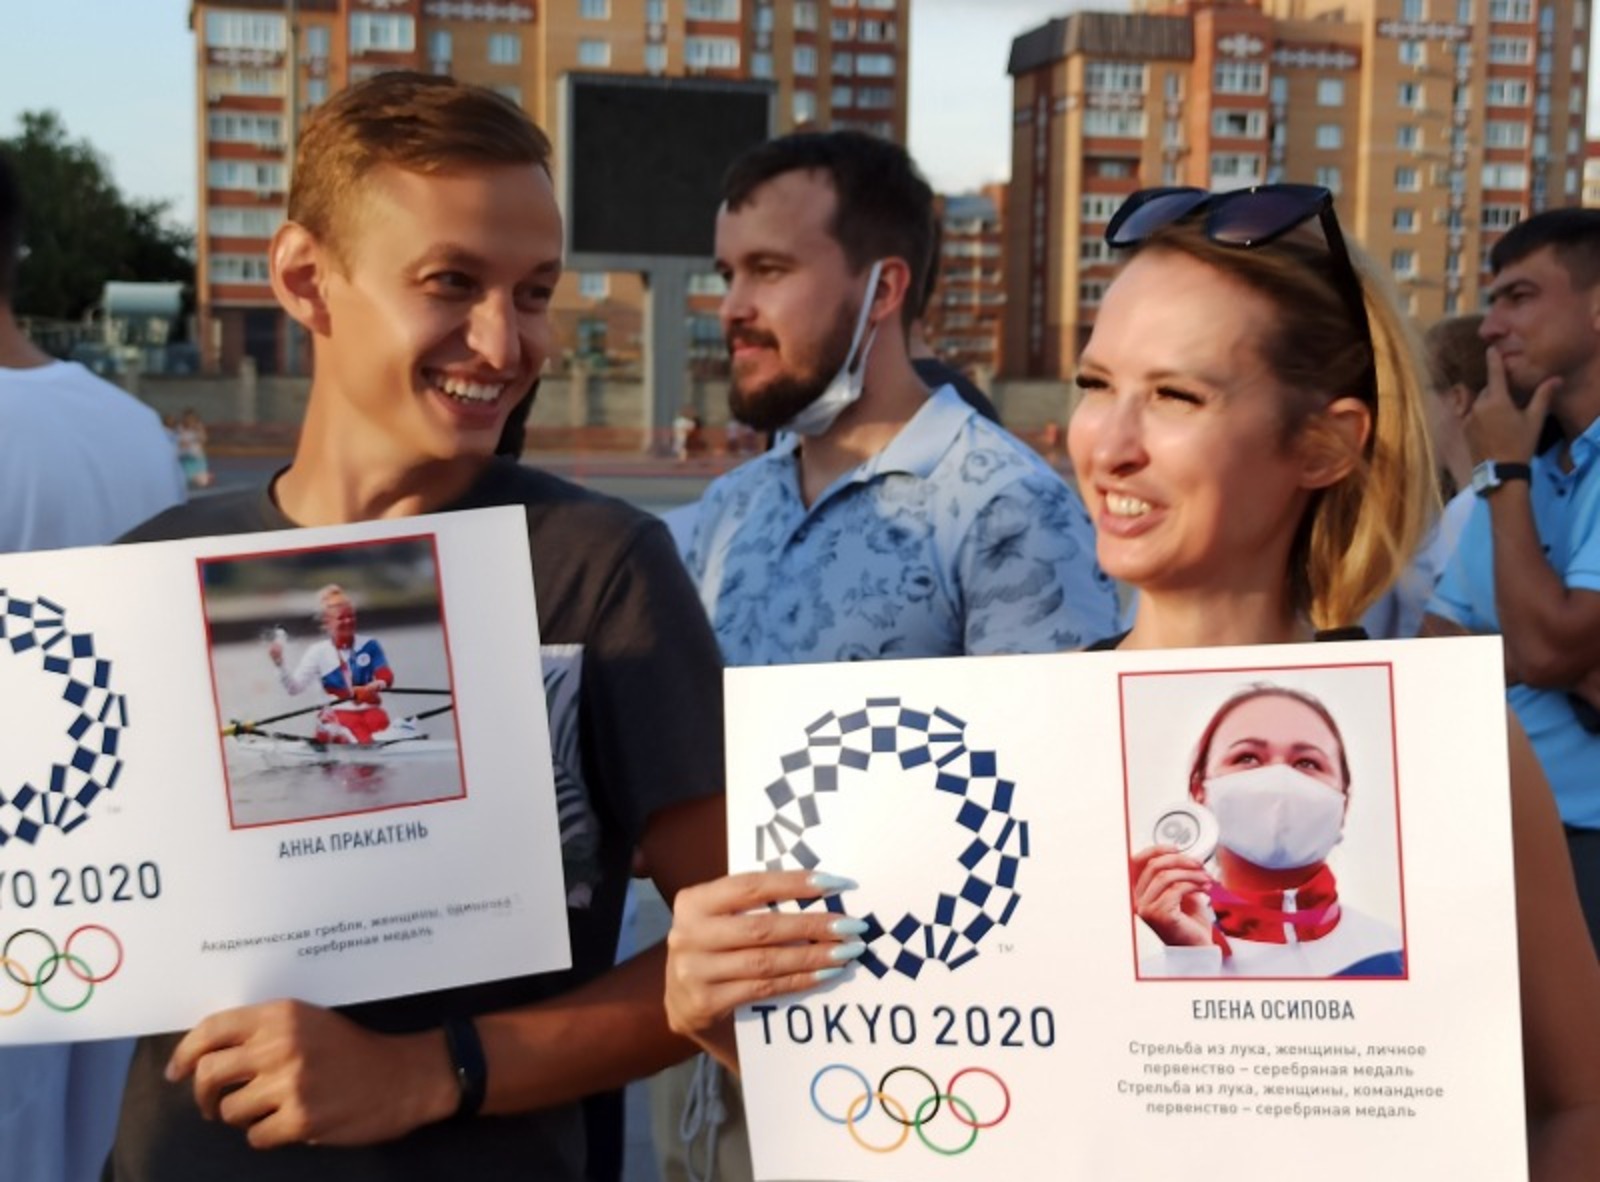 Участники акции держали плакаты с изображениями российских олимпийцев.